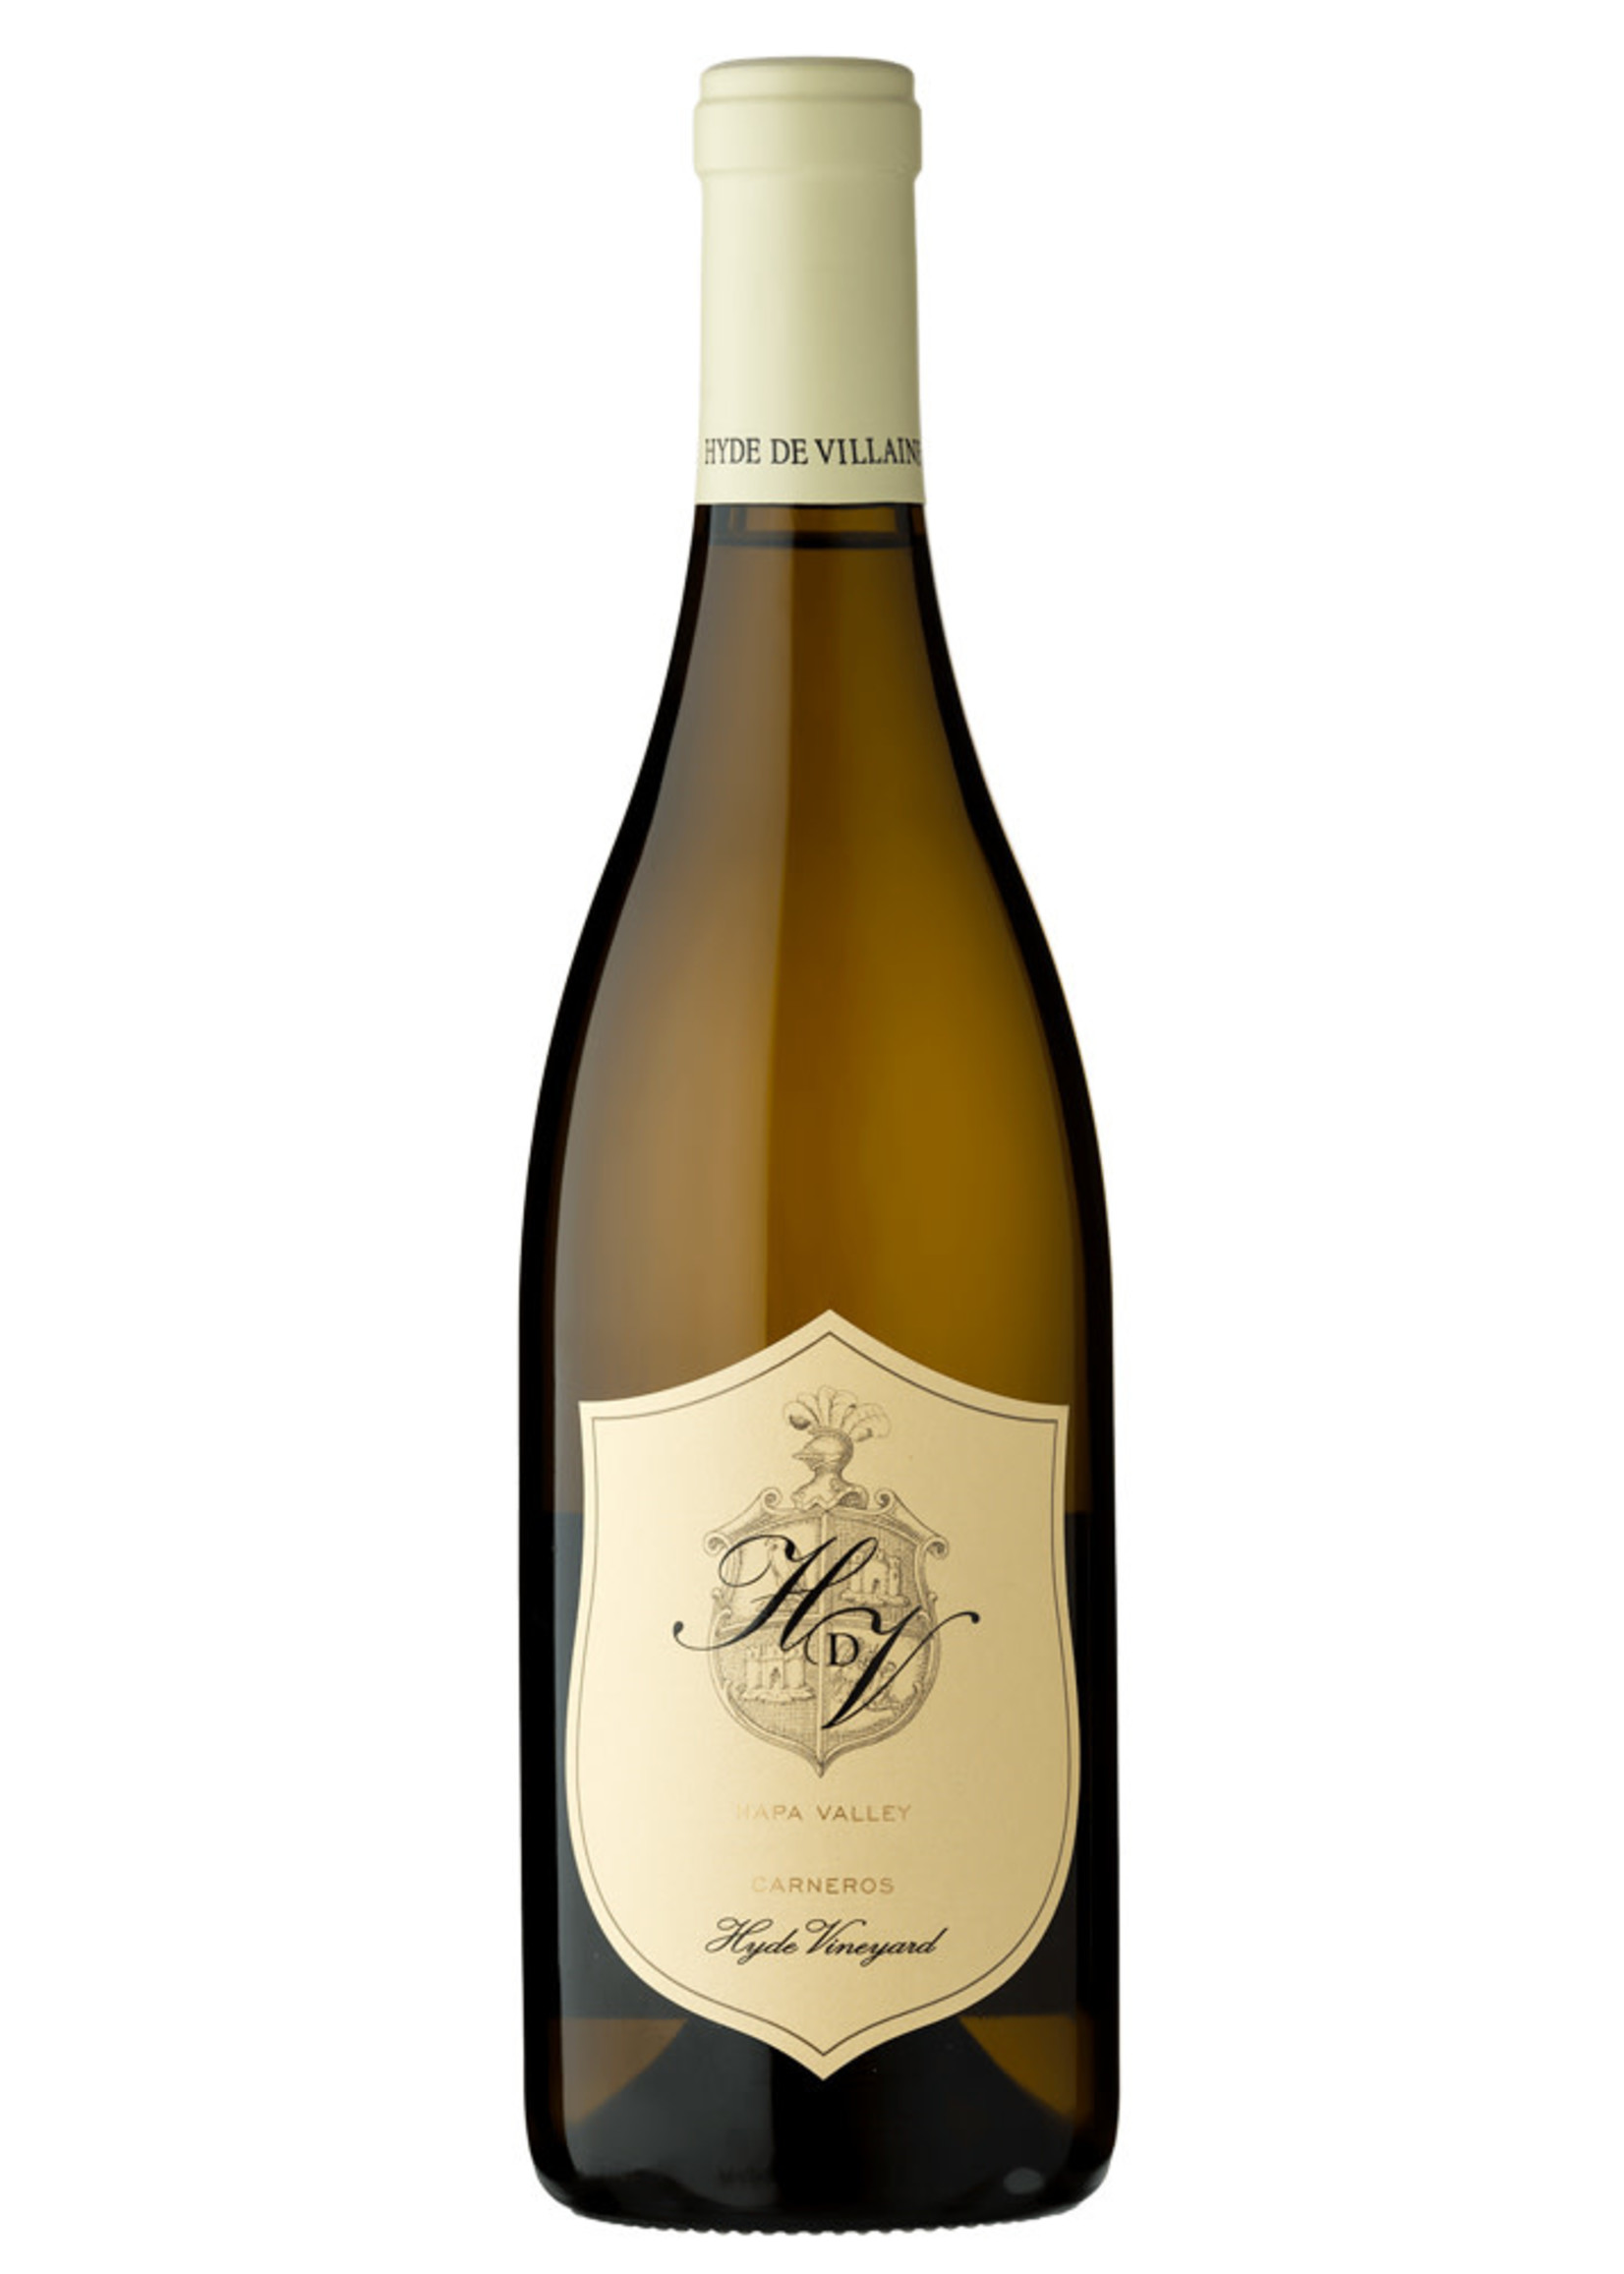 HDV Chardonnay Carneros “Hyde Vineyard” 2020 750ML